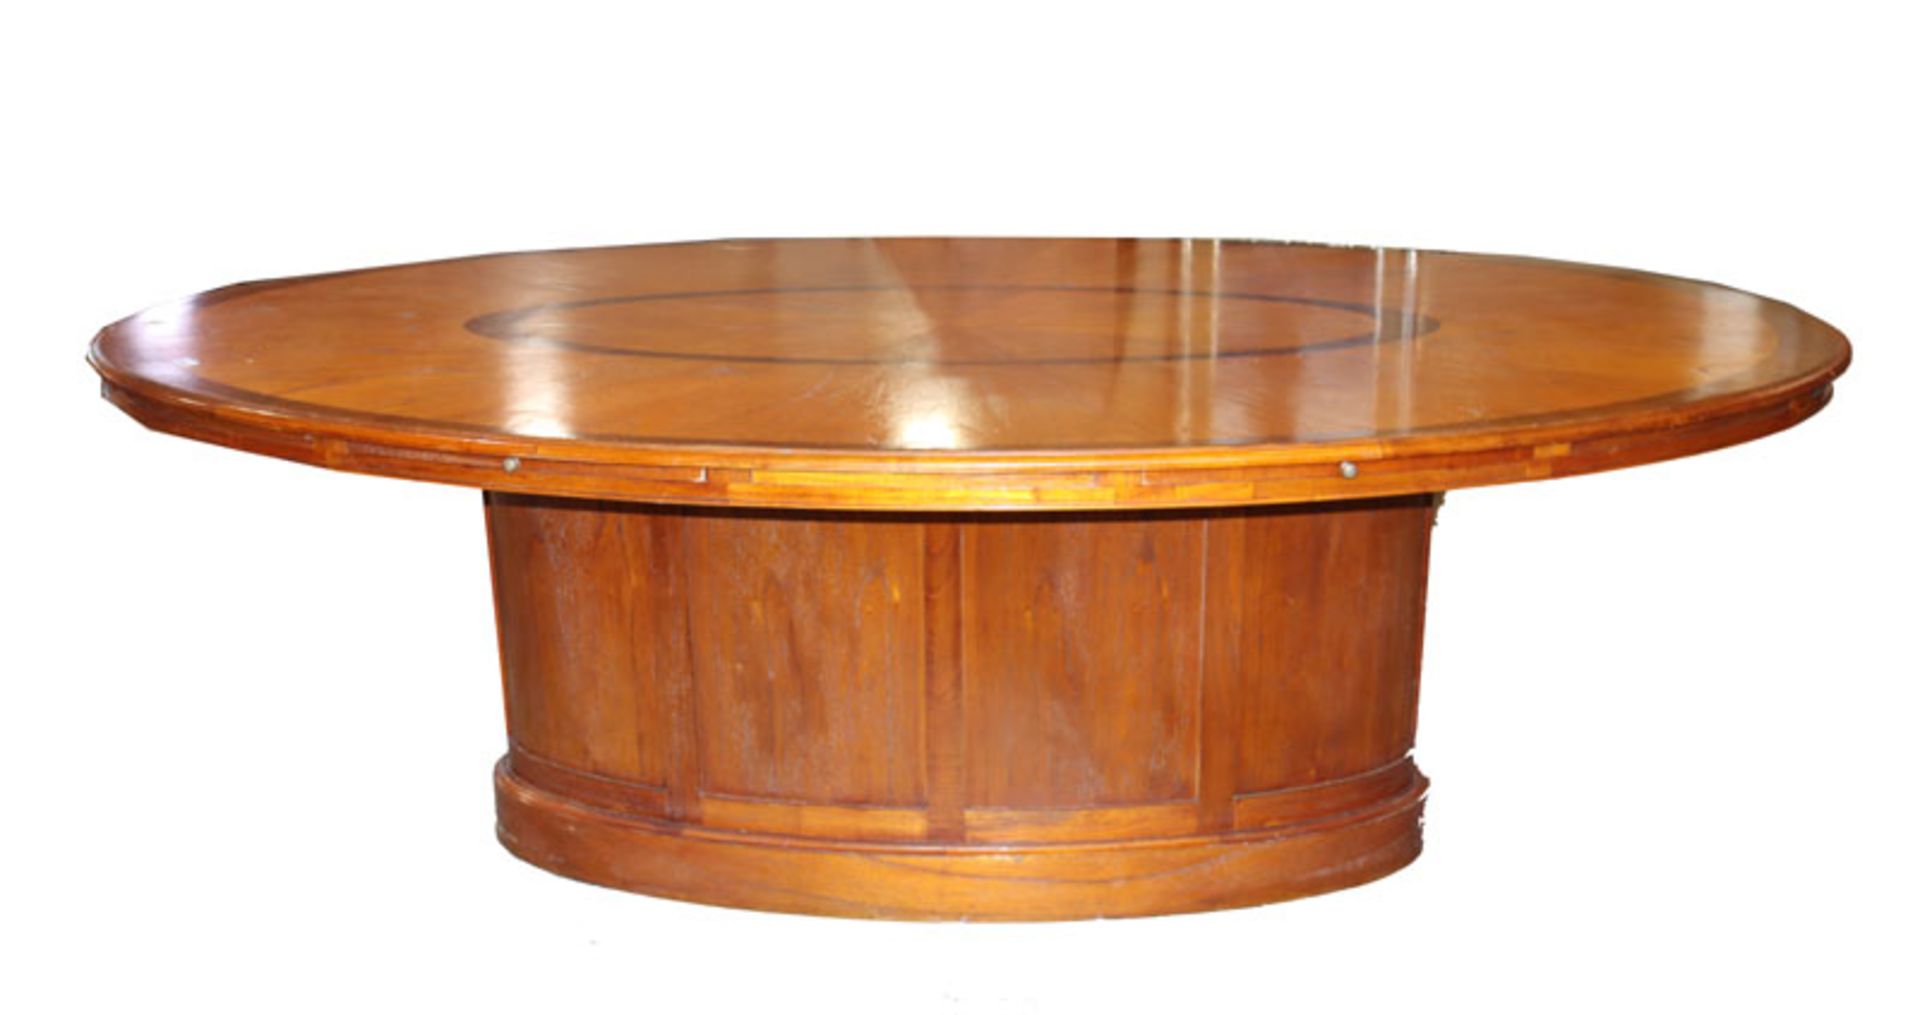 Großer, ovaler Tisch/Konverenztisch auf ovalem Mittelfuß, mit 2 ausziehbaren Platten, Tischplatte